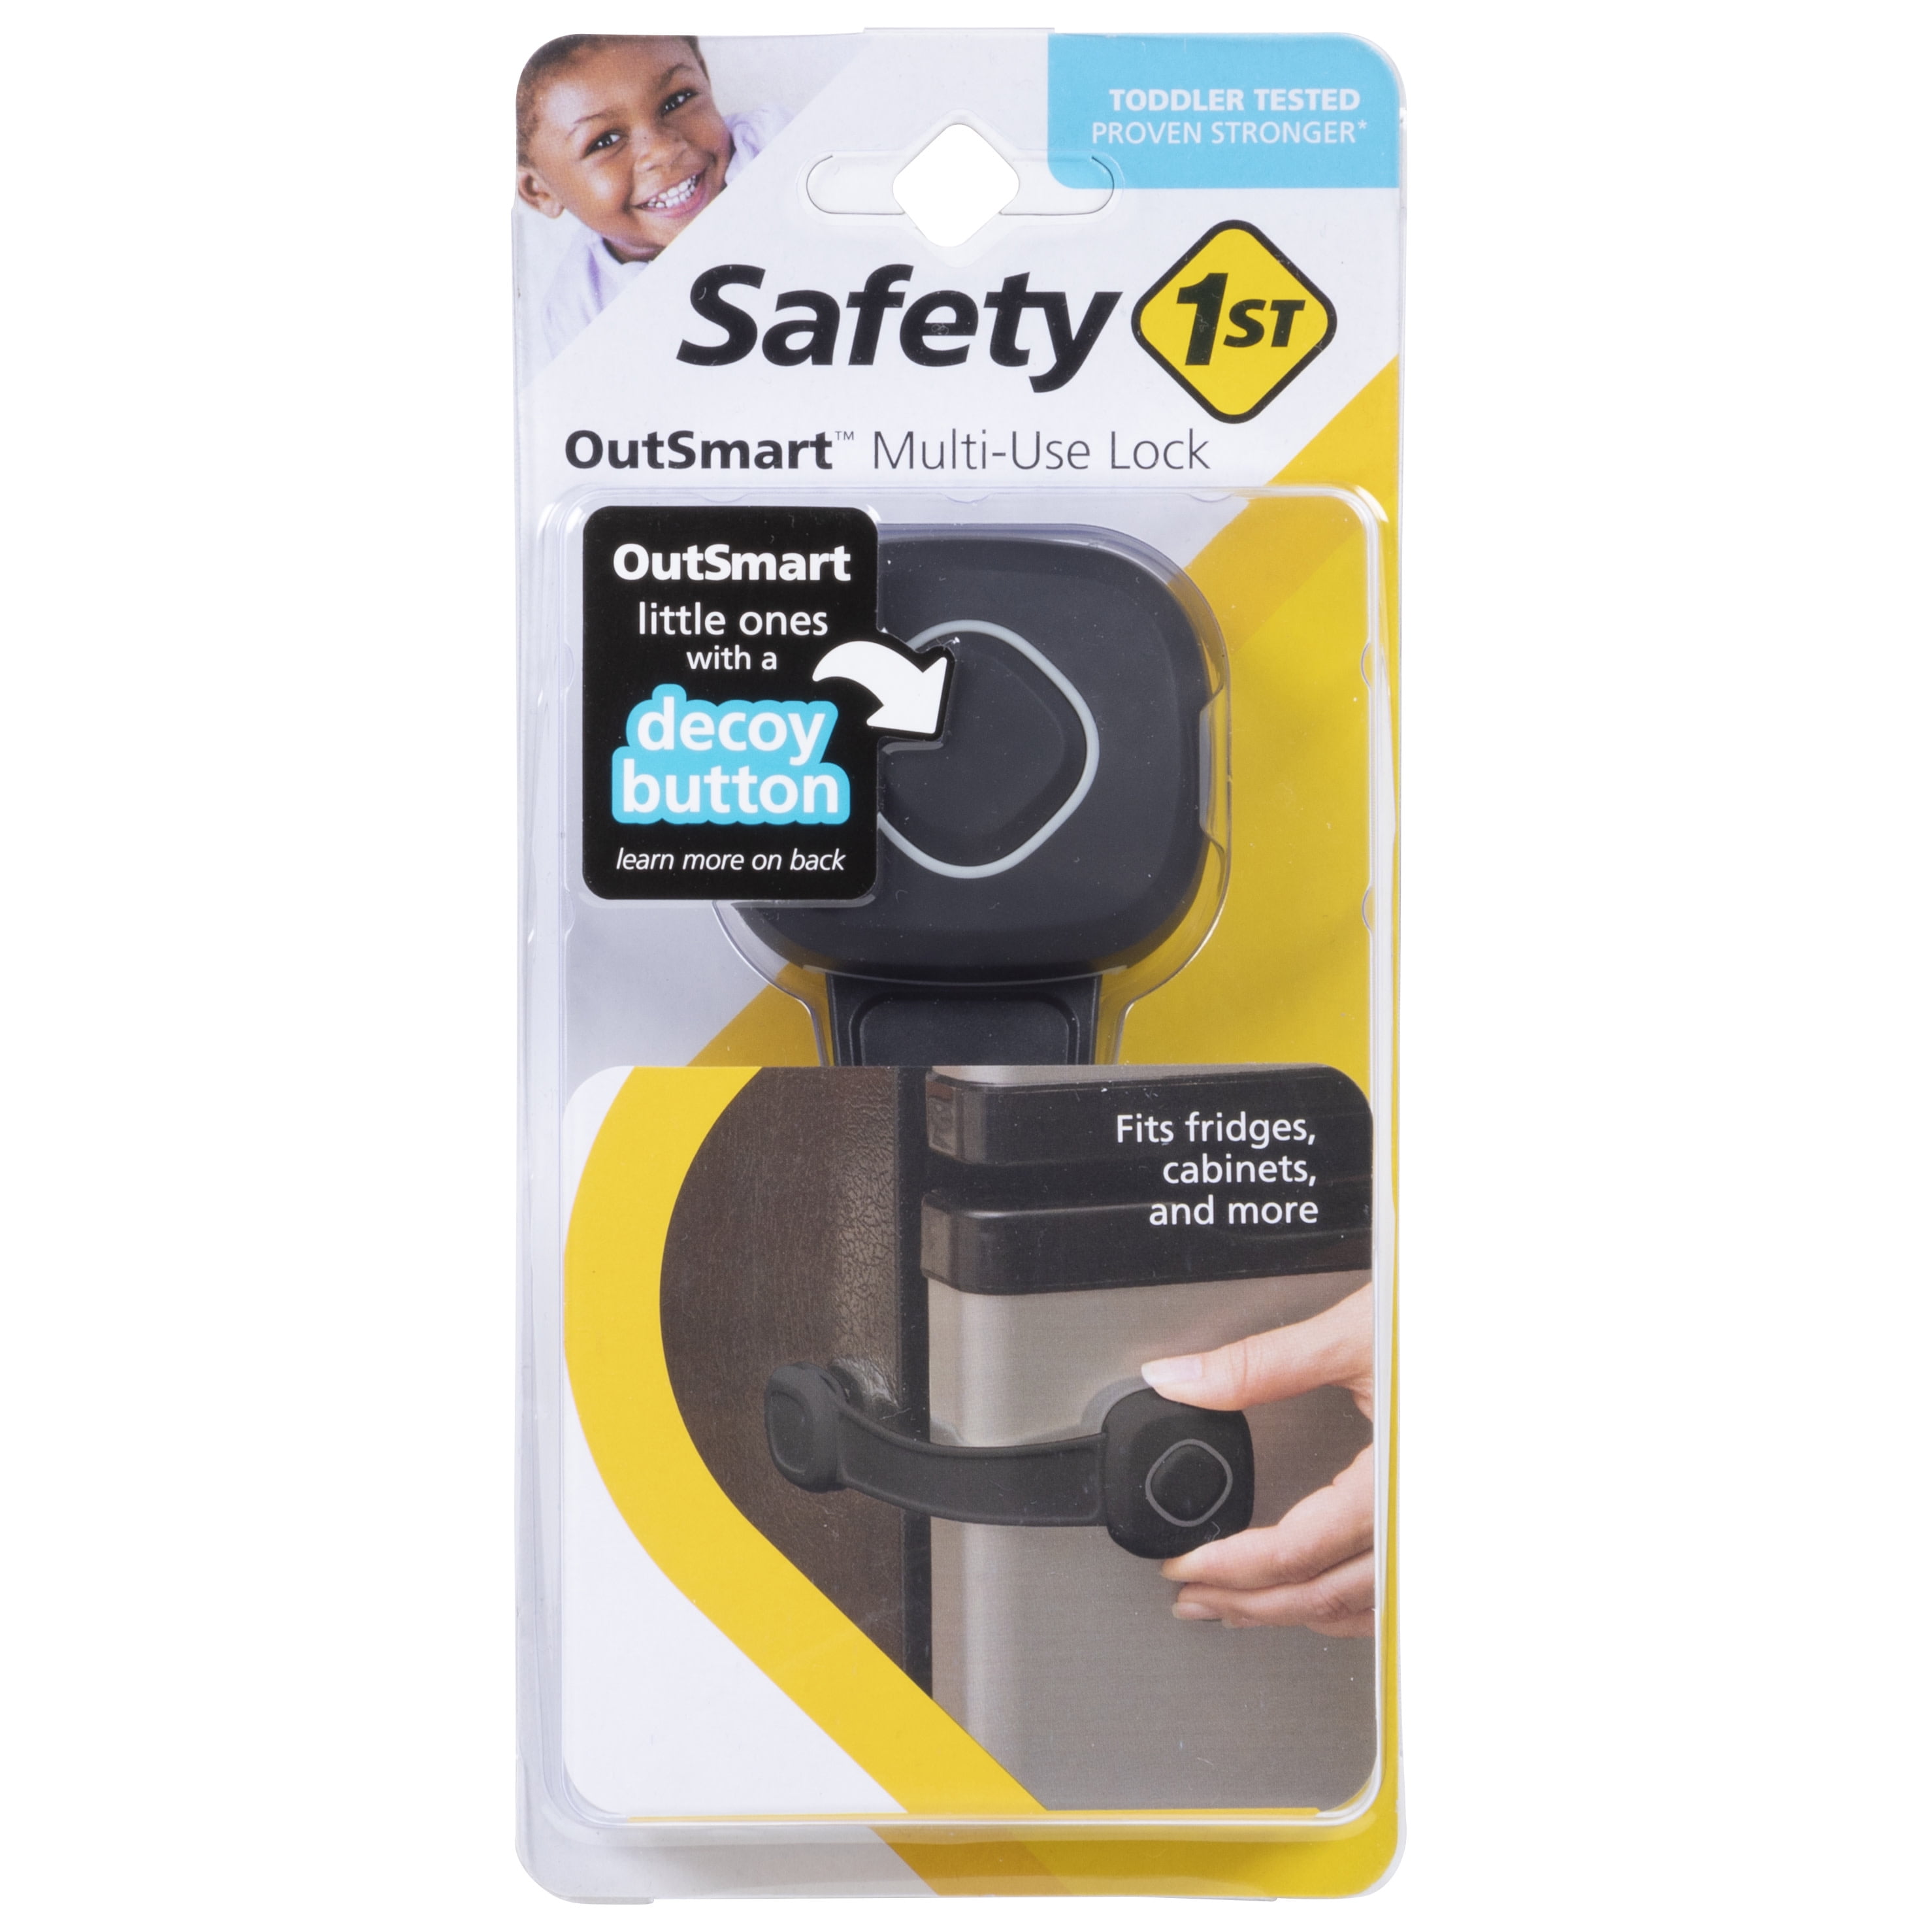 Safety 1st Safety 1ˢᵗ OutSmart Multi-Use Lock, Black